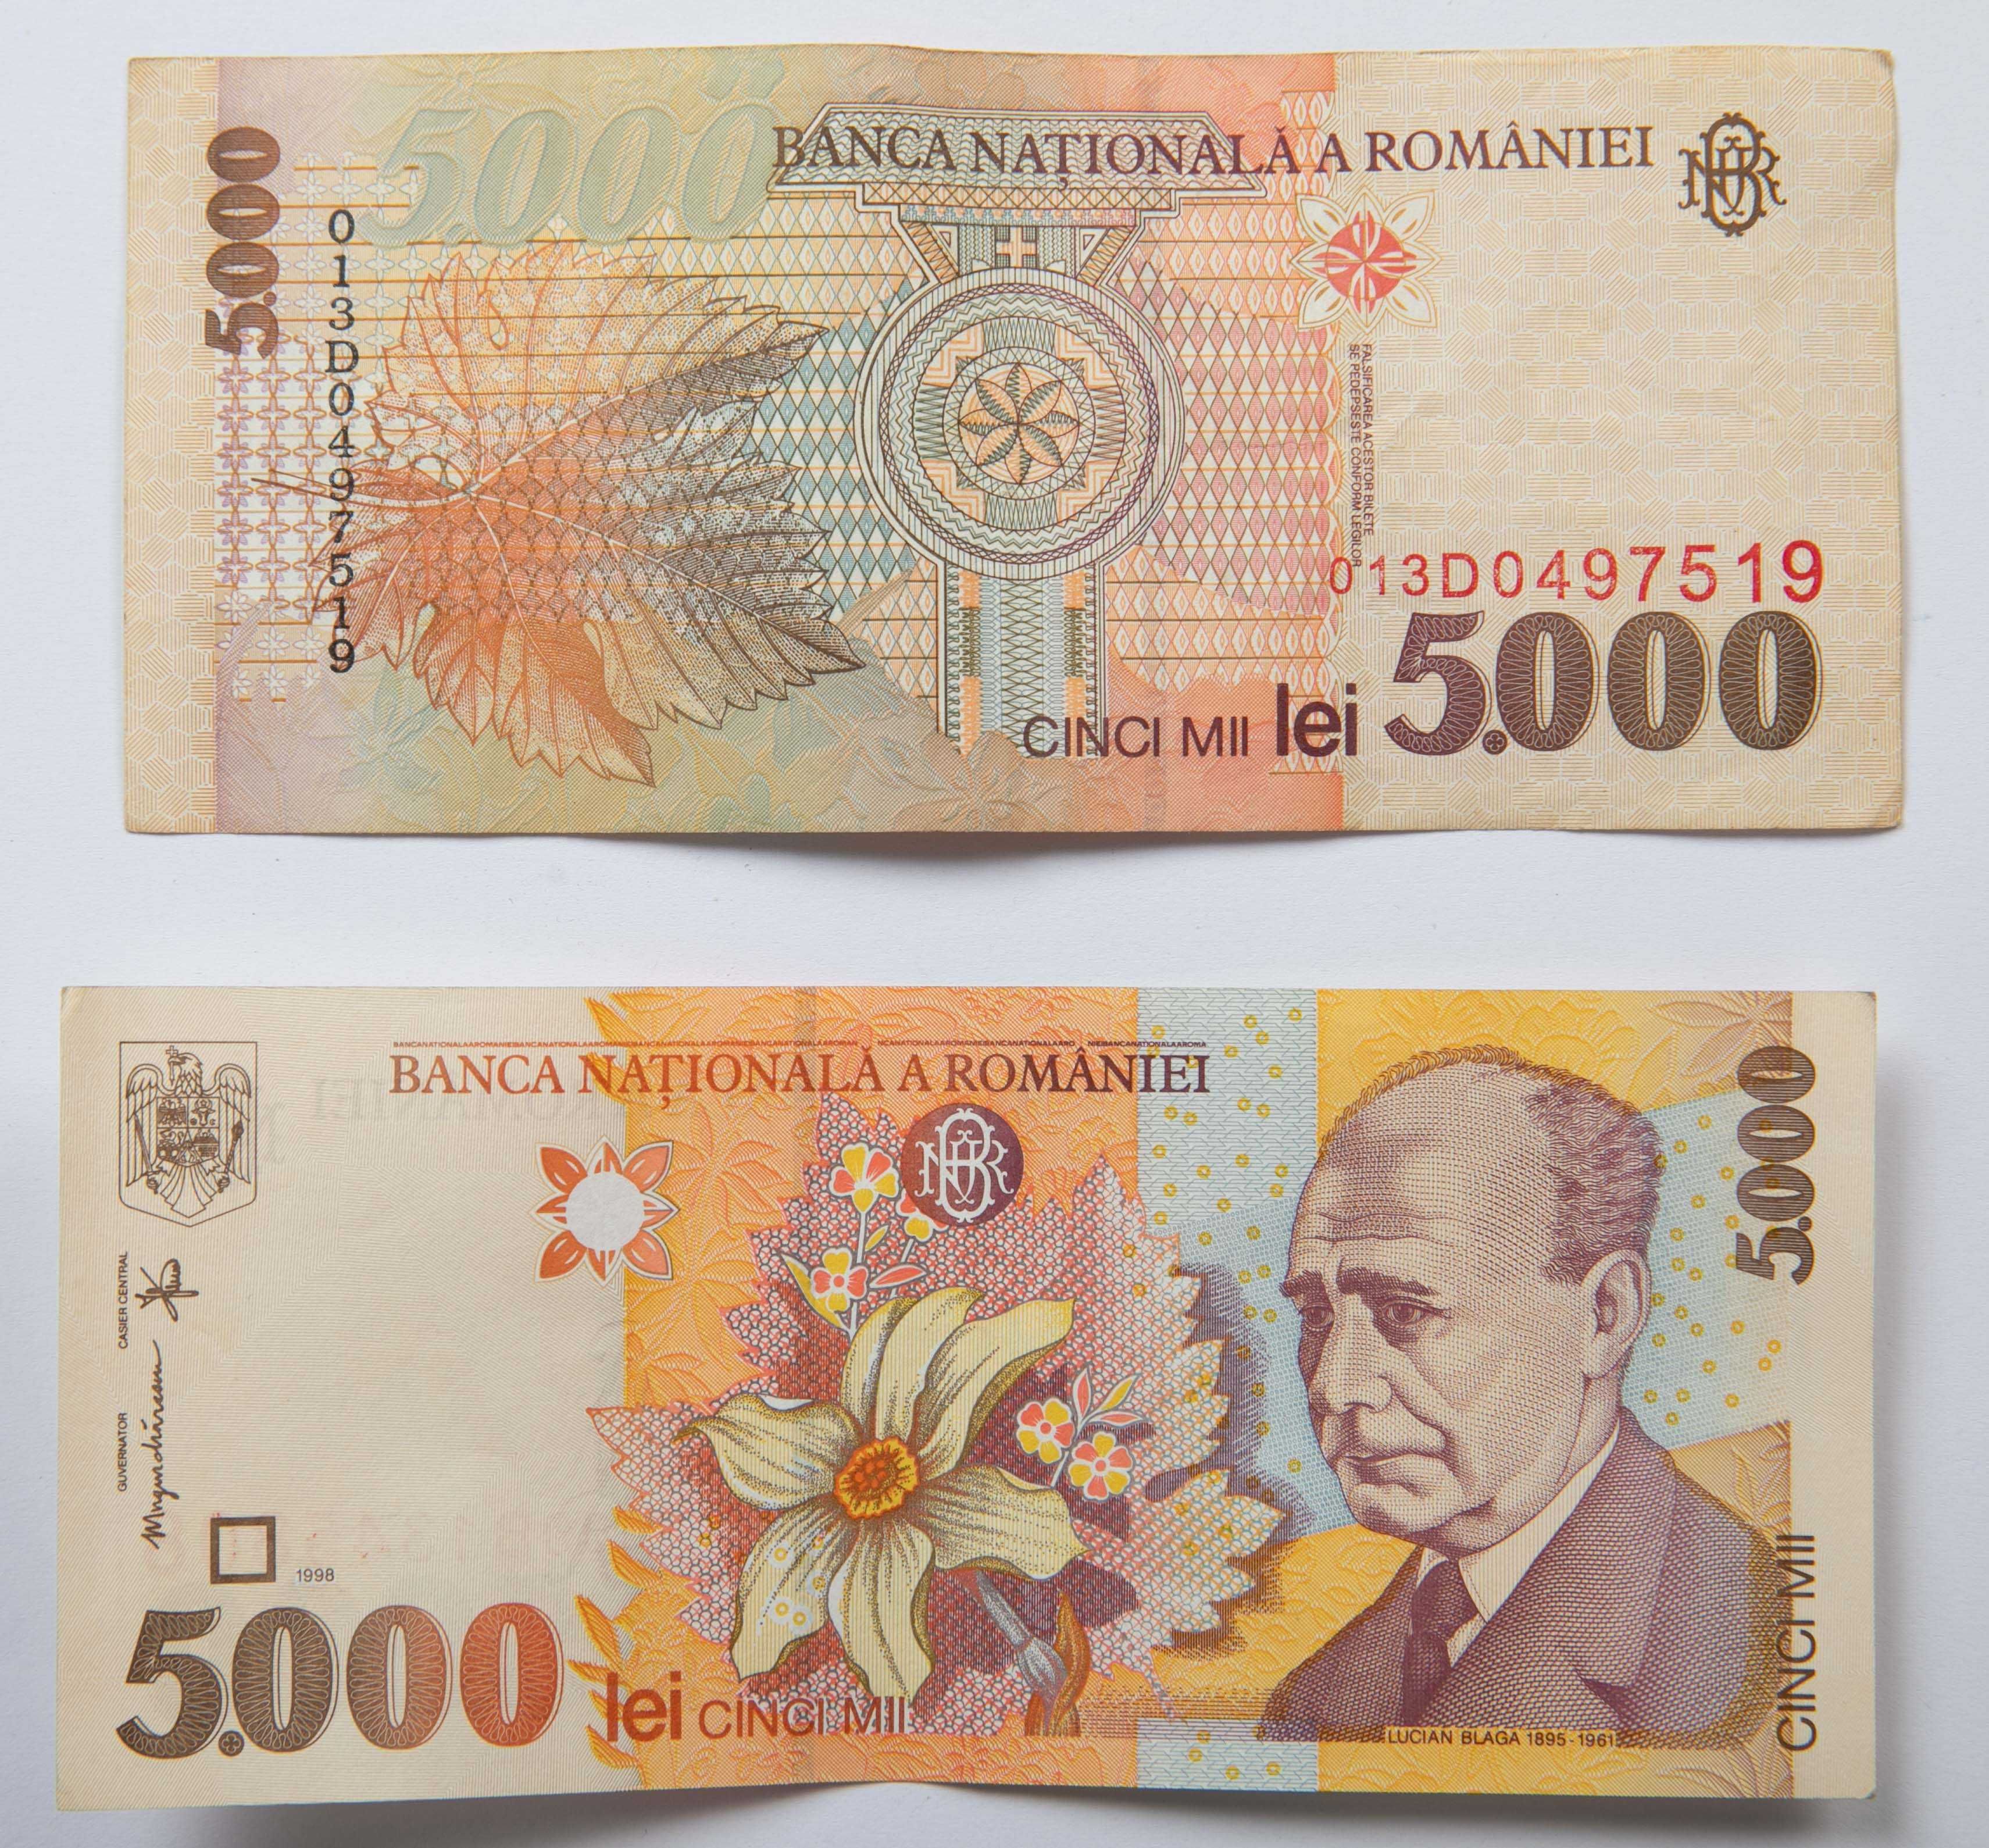 Bacnota 5000 lei 1998